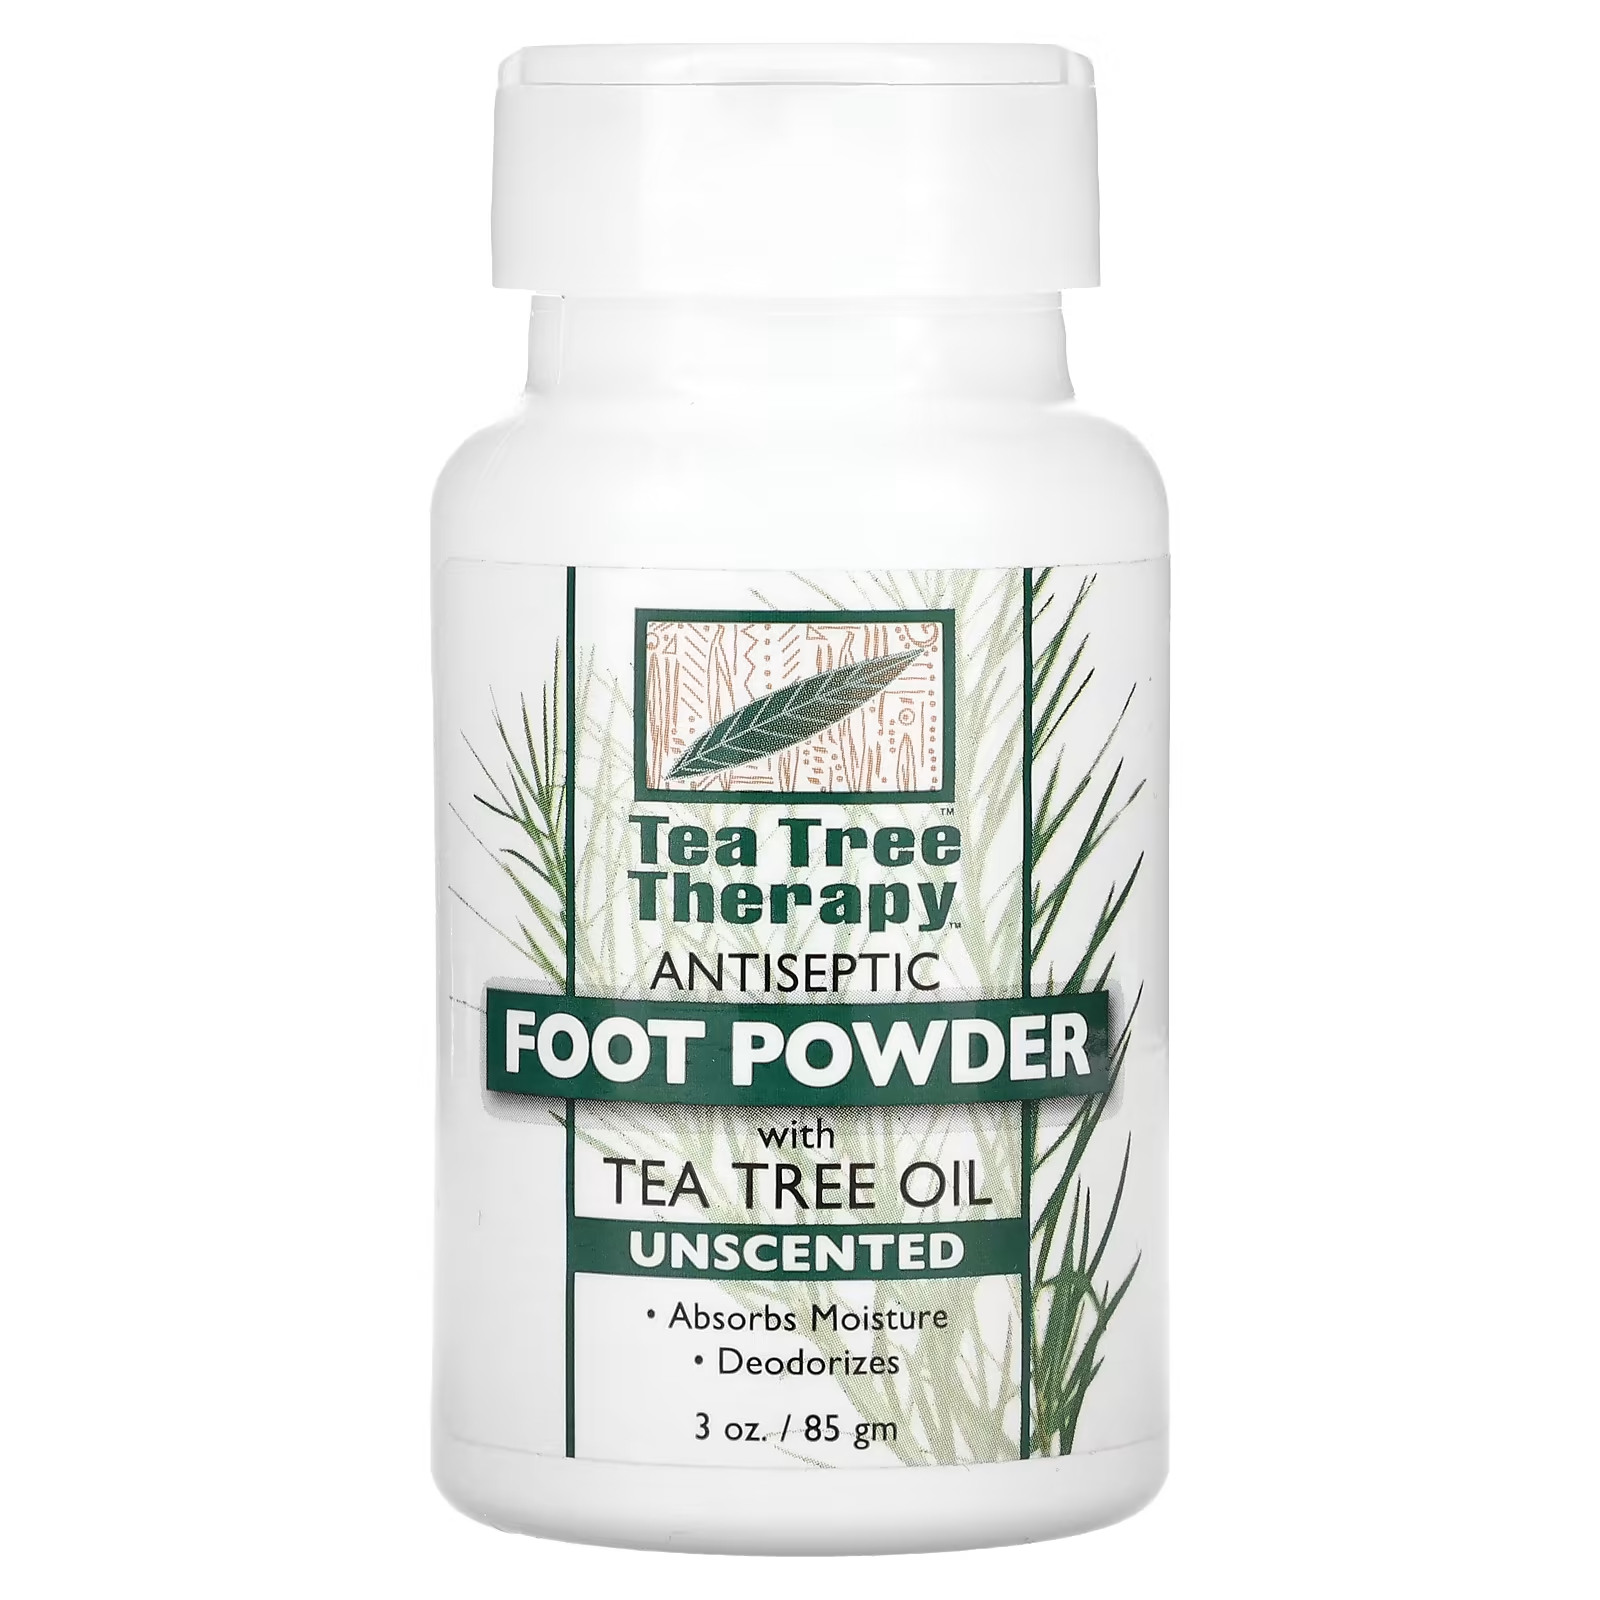 Антисептическая пудра для ног Tea Tree Therapy с маслом чайного дерева, 85 г tea tree therapy натуральная отбеливающая зубная паста с маслом чайного дерева 85 г 3 унции